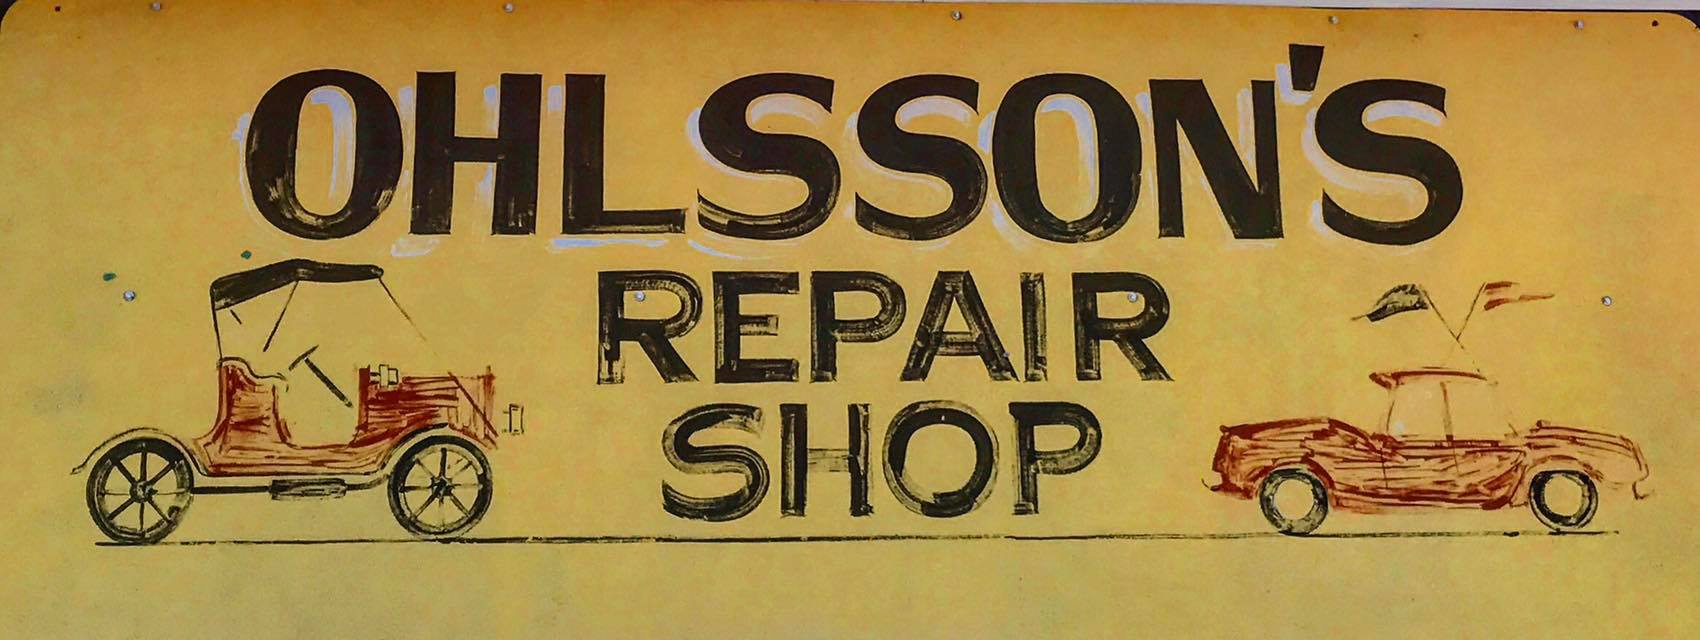 Ohlsson's Repair